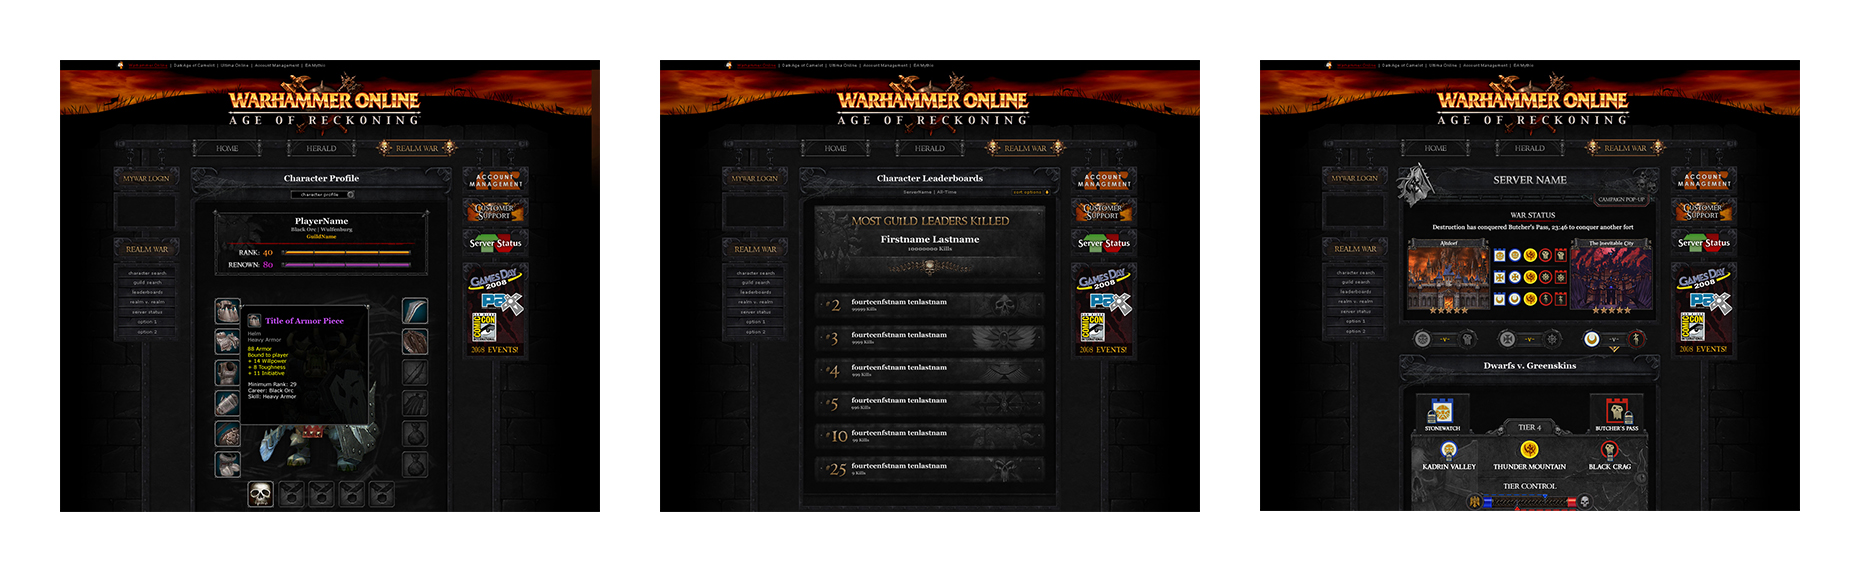 Case Study: Warhammer Online